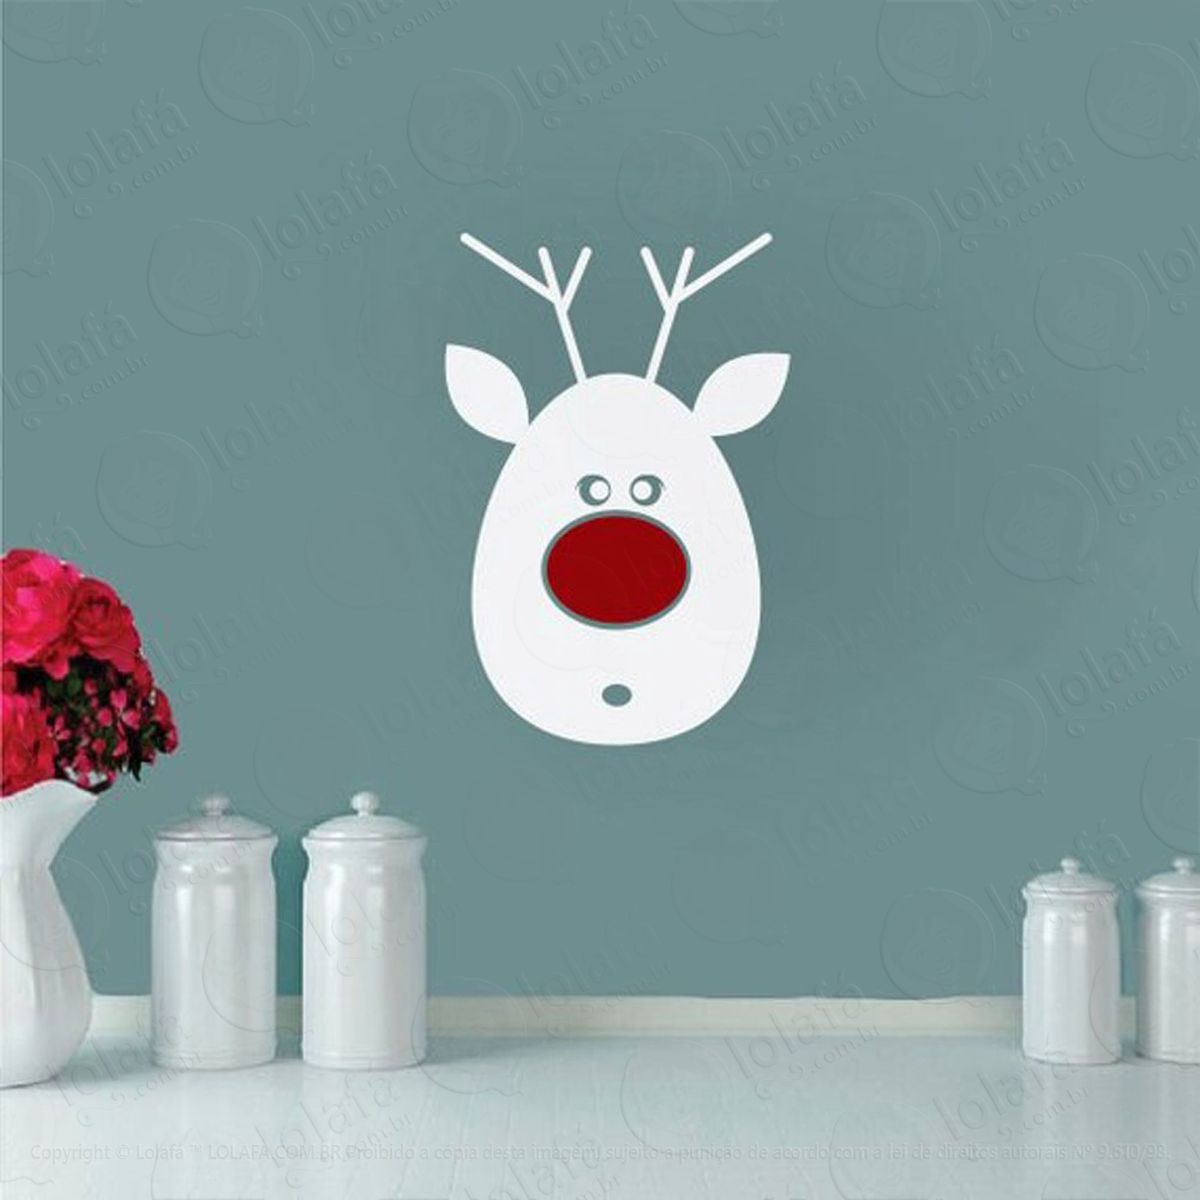 rudolph nariz vermelho adesivo de natal para vitrine, parede, porta de vidro - decoração natalina mod:240